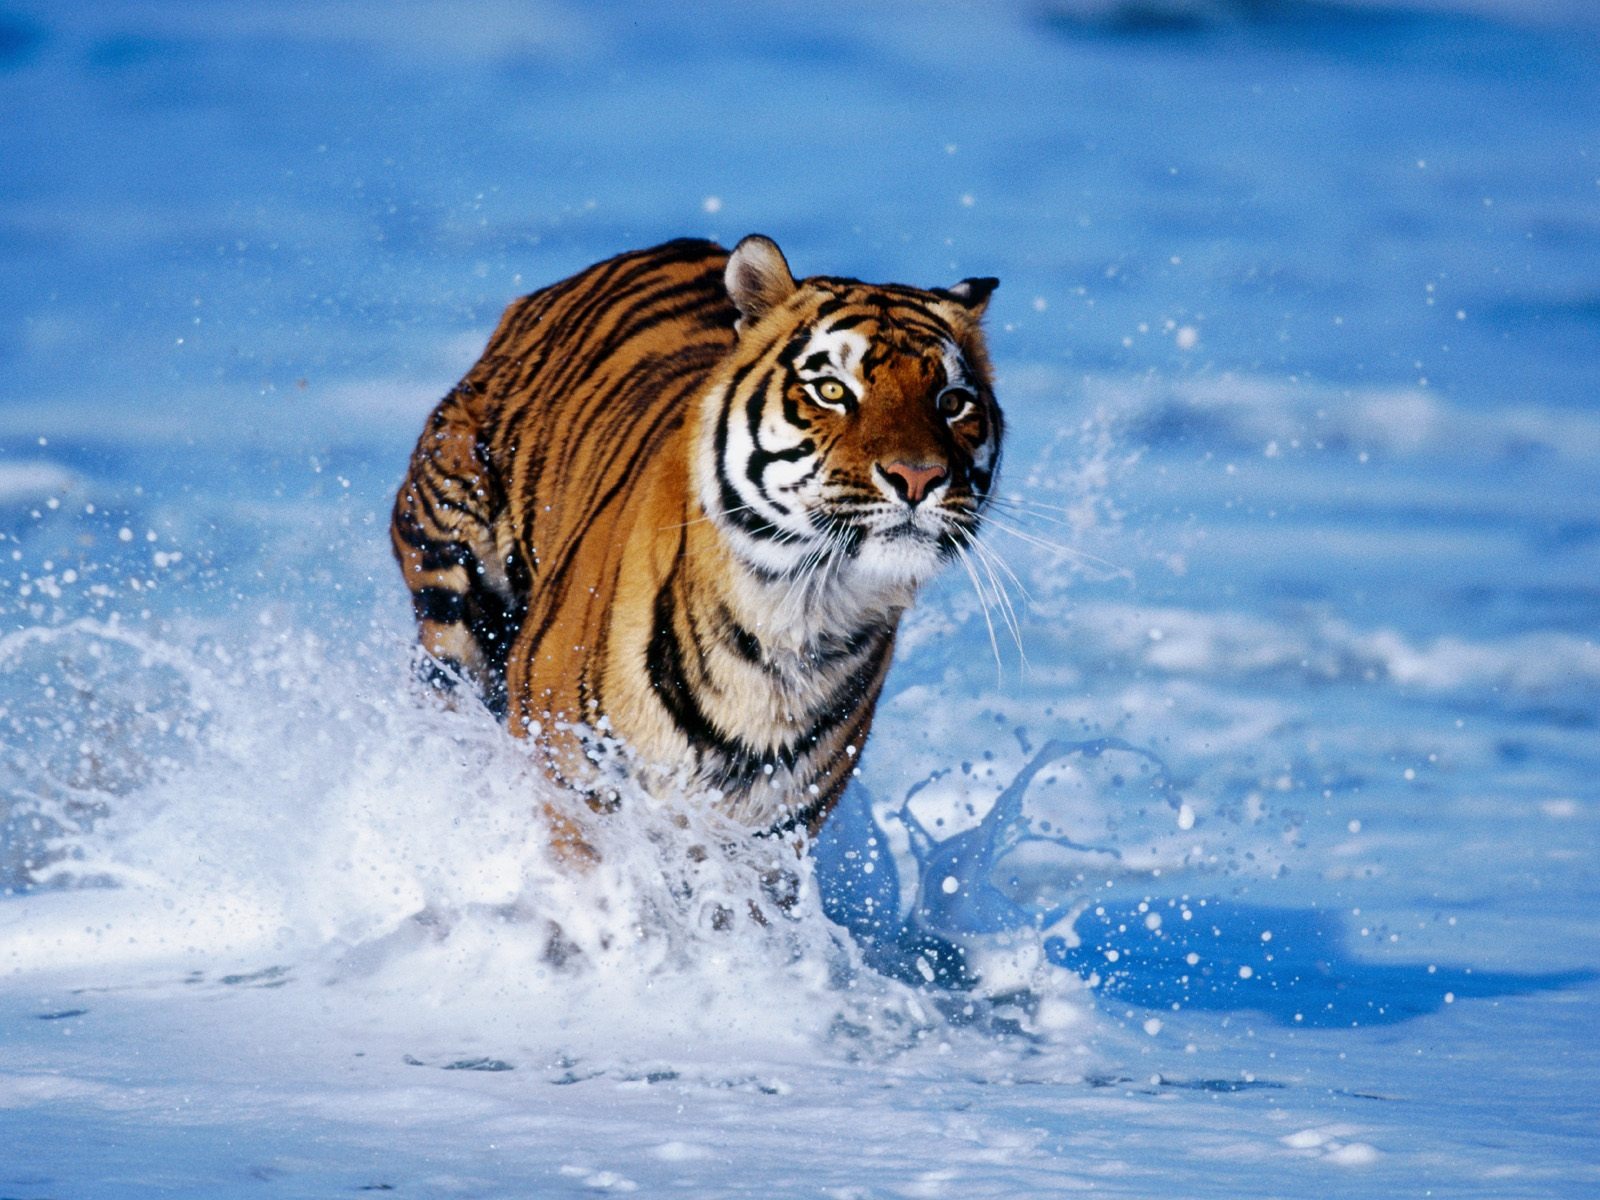 Fond d'ecran Tigre court dans l'eau